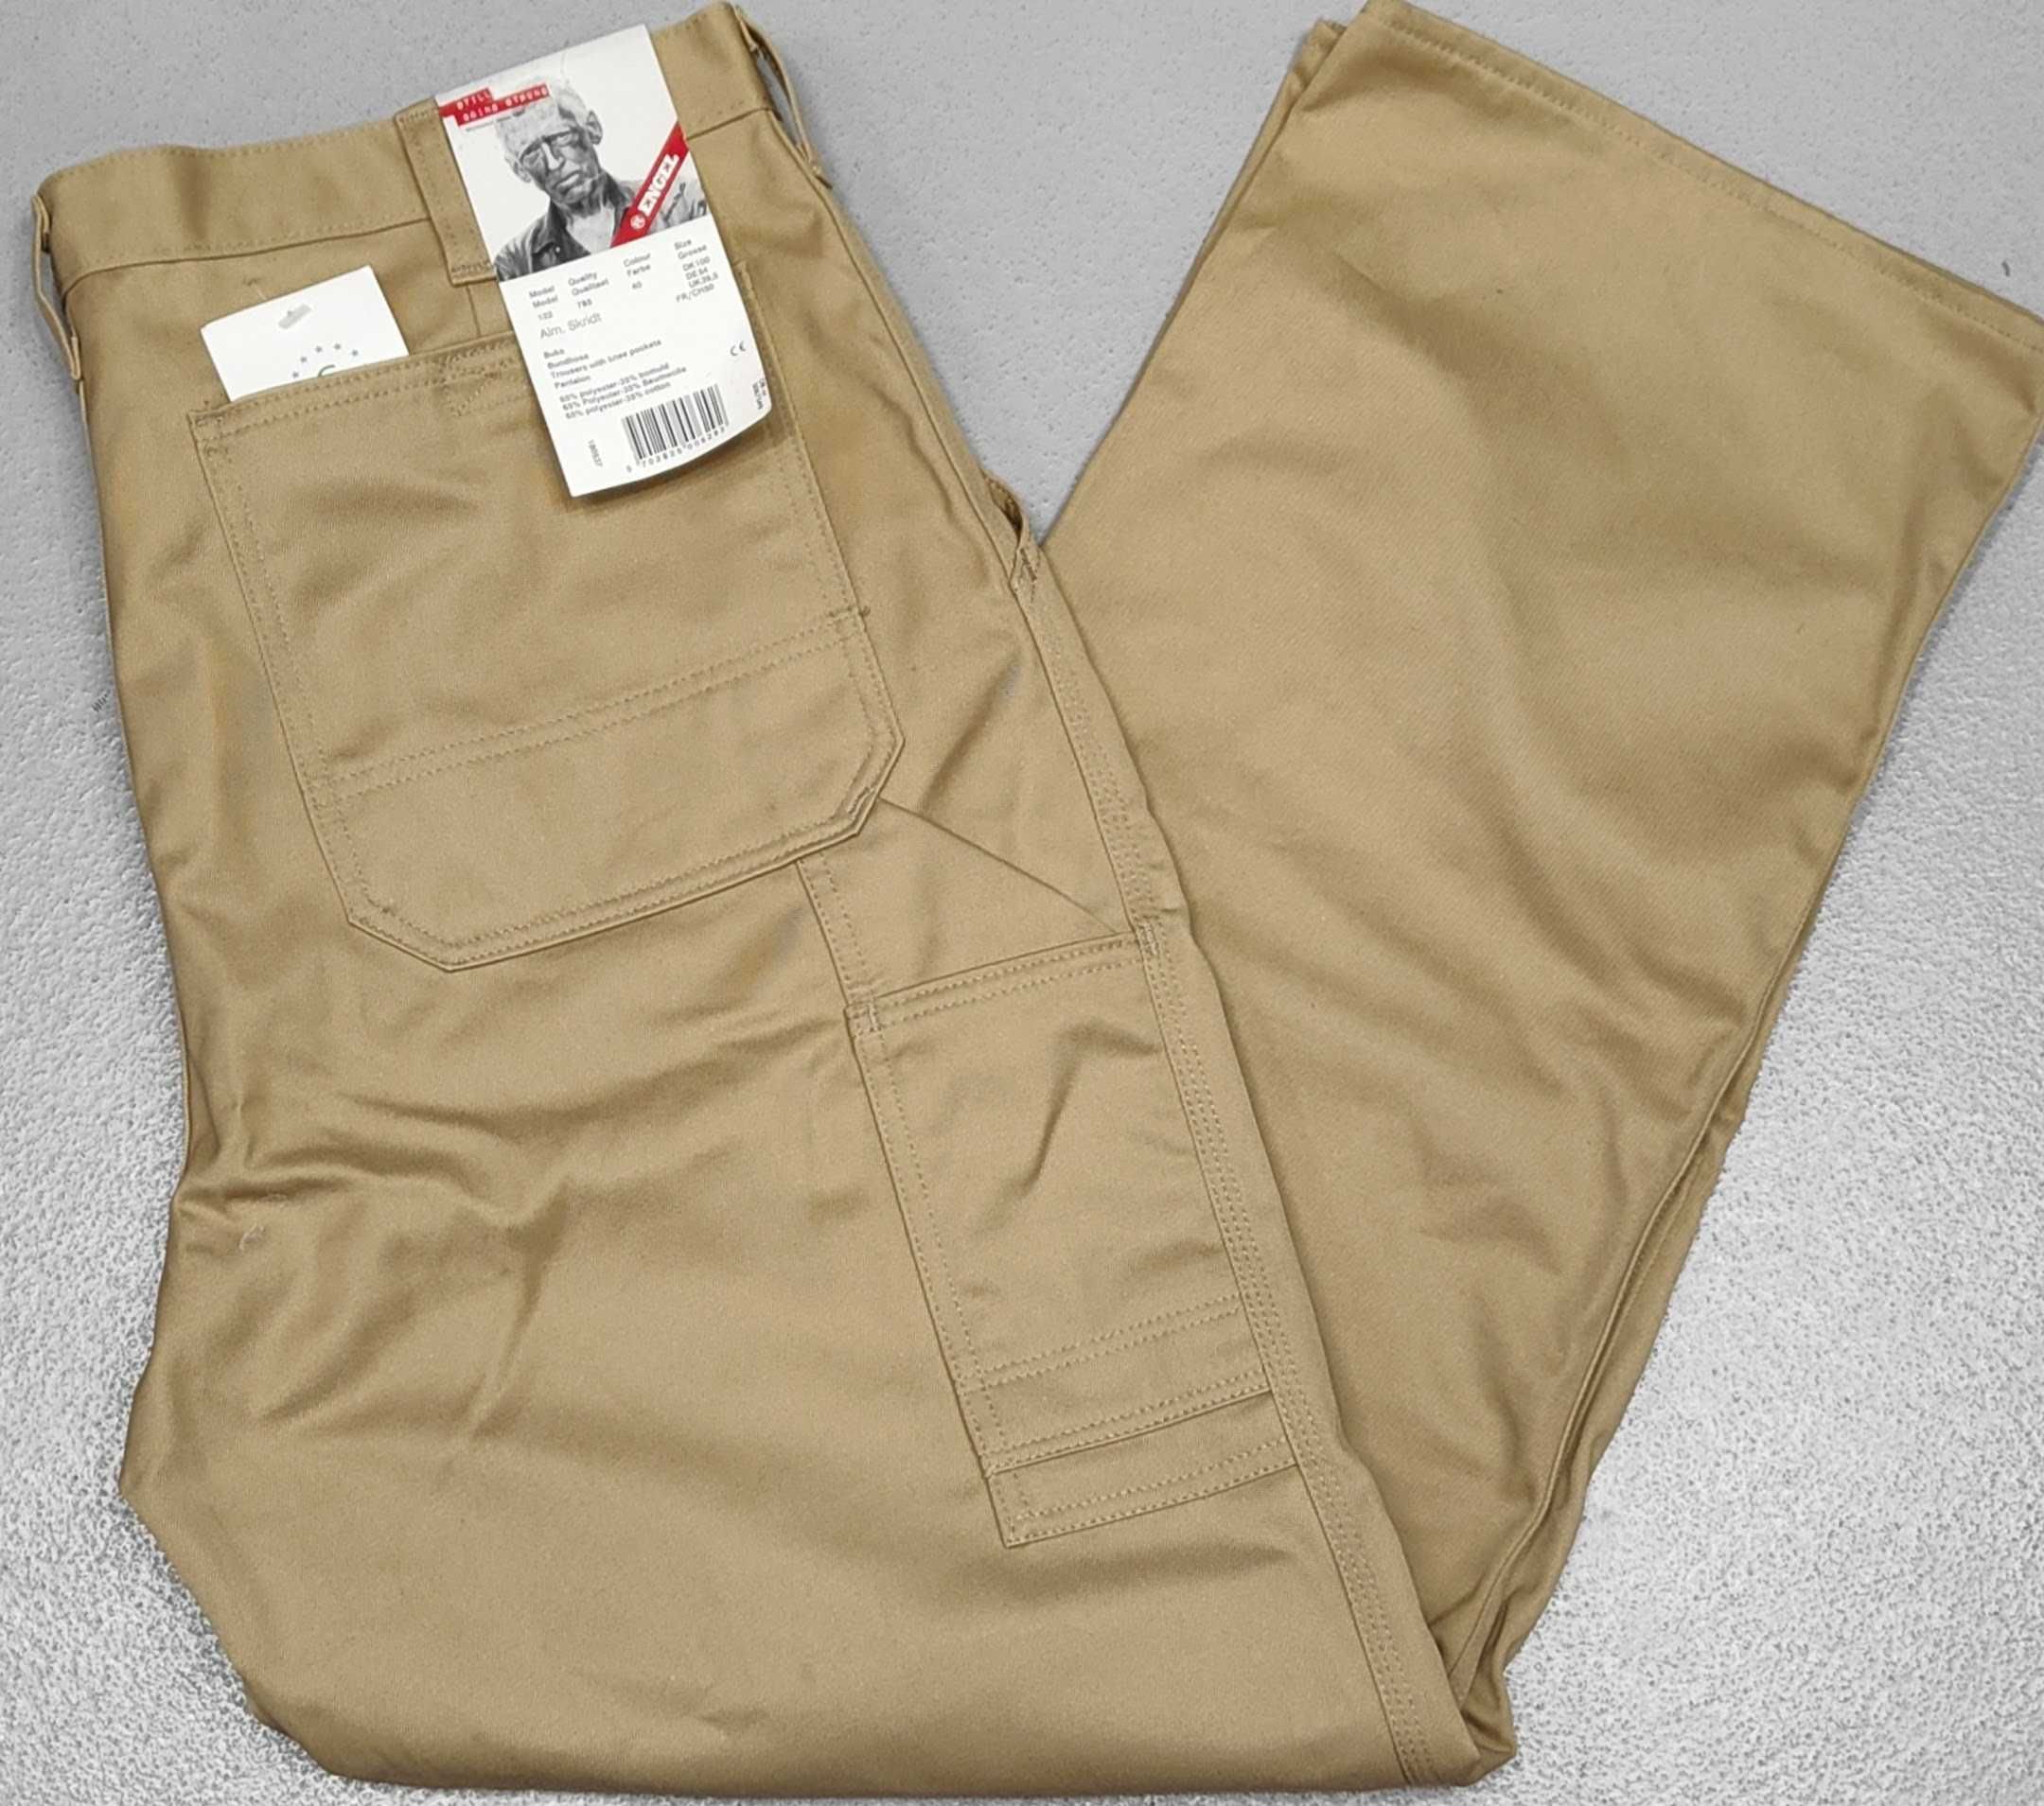 Rw)FE ENGEL oryginalne spodnie typu bojówki/robocze Roz.54